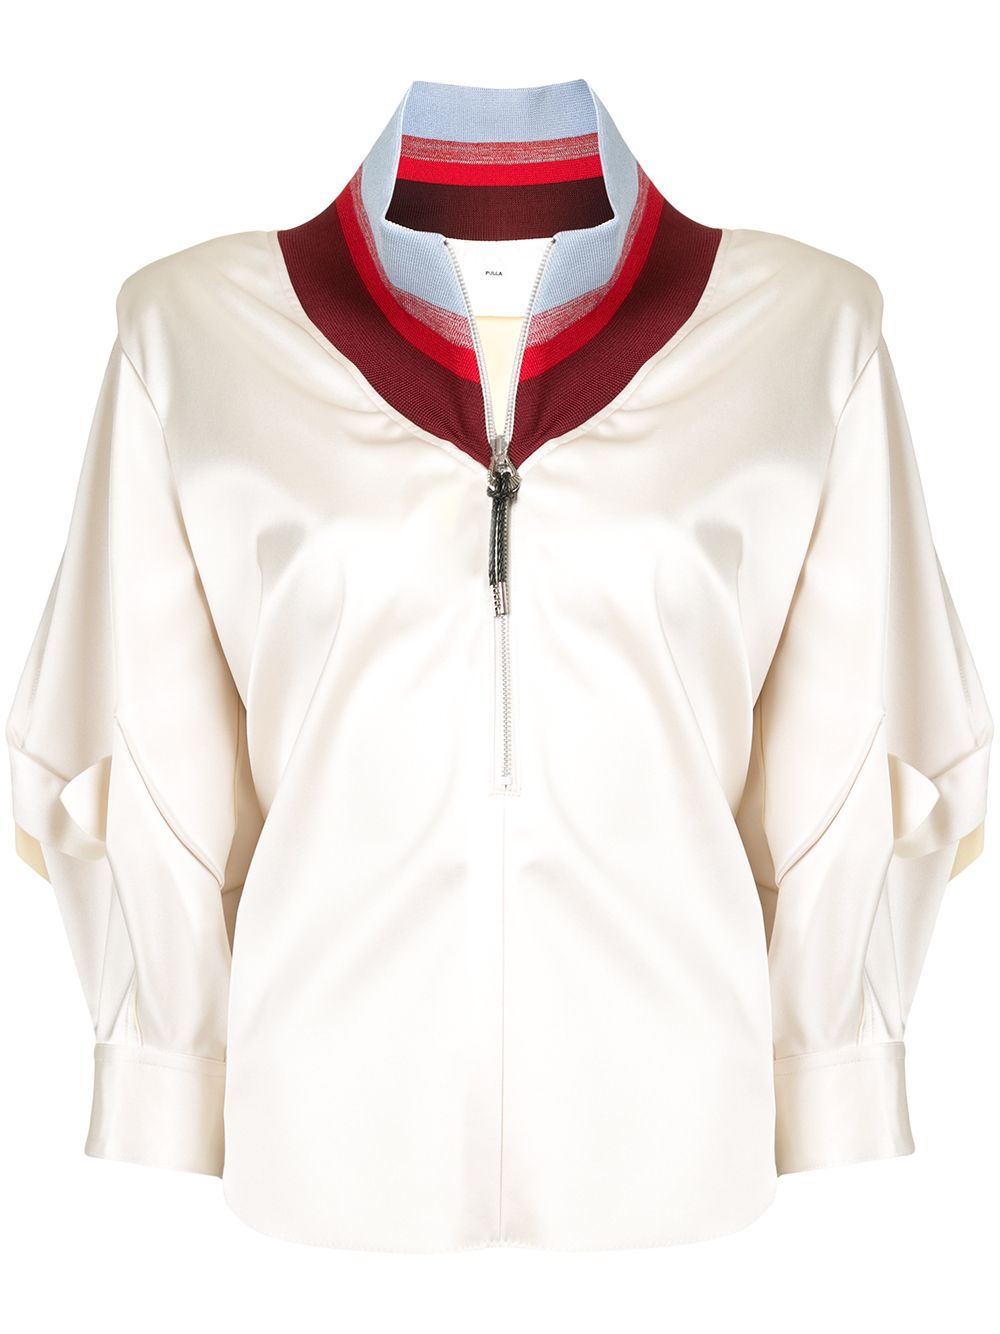 фото Toga атласная блузка с воротником в полоску